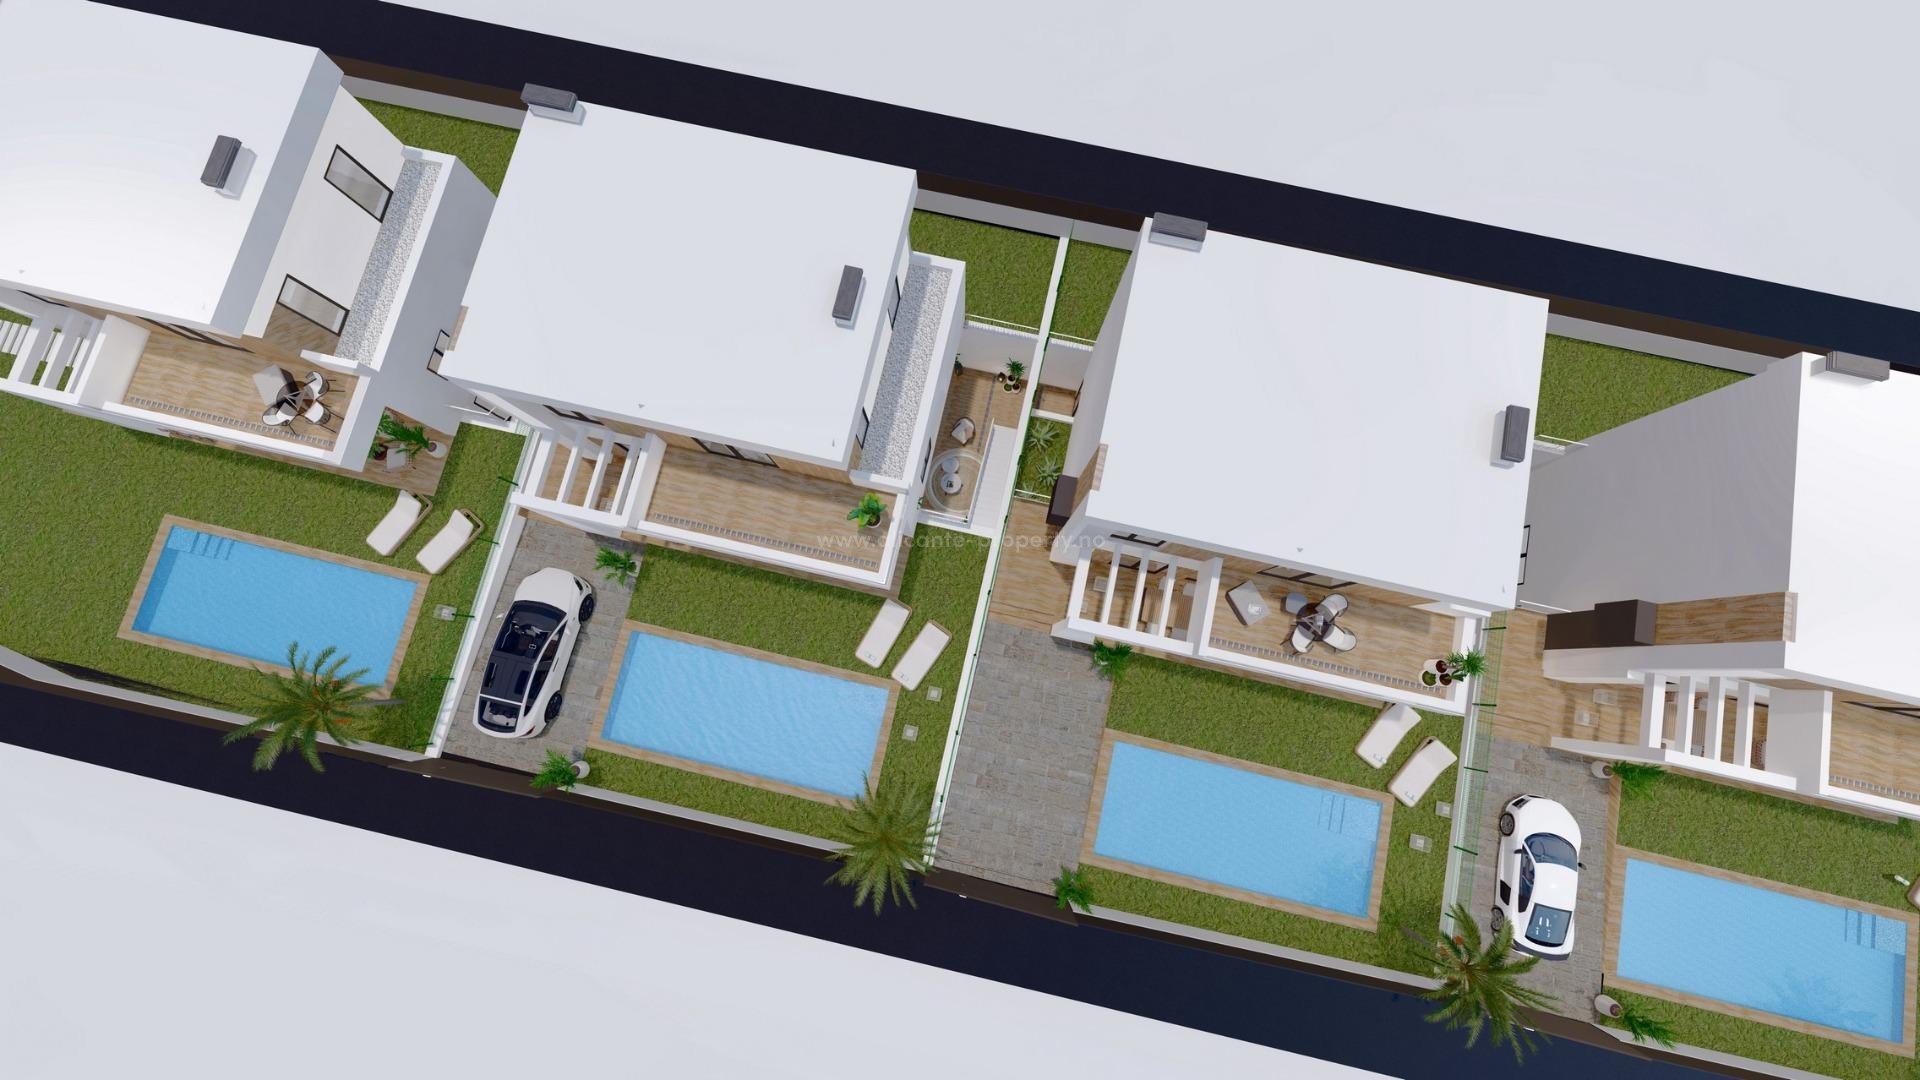 Nye moderne luksus-villaer i Finestrat, 3 soverom, 3 bad, privat hage med basseng og parkering, store terrasser, nære to golfbaner